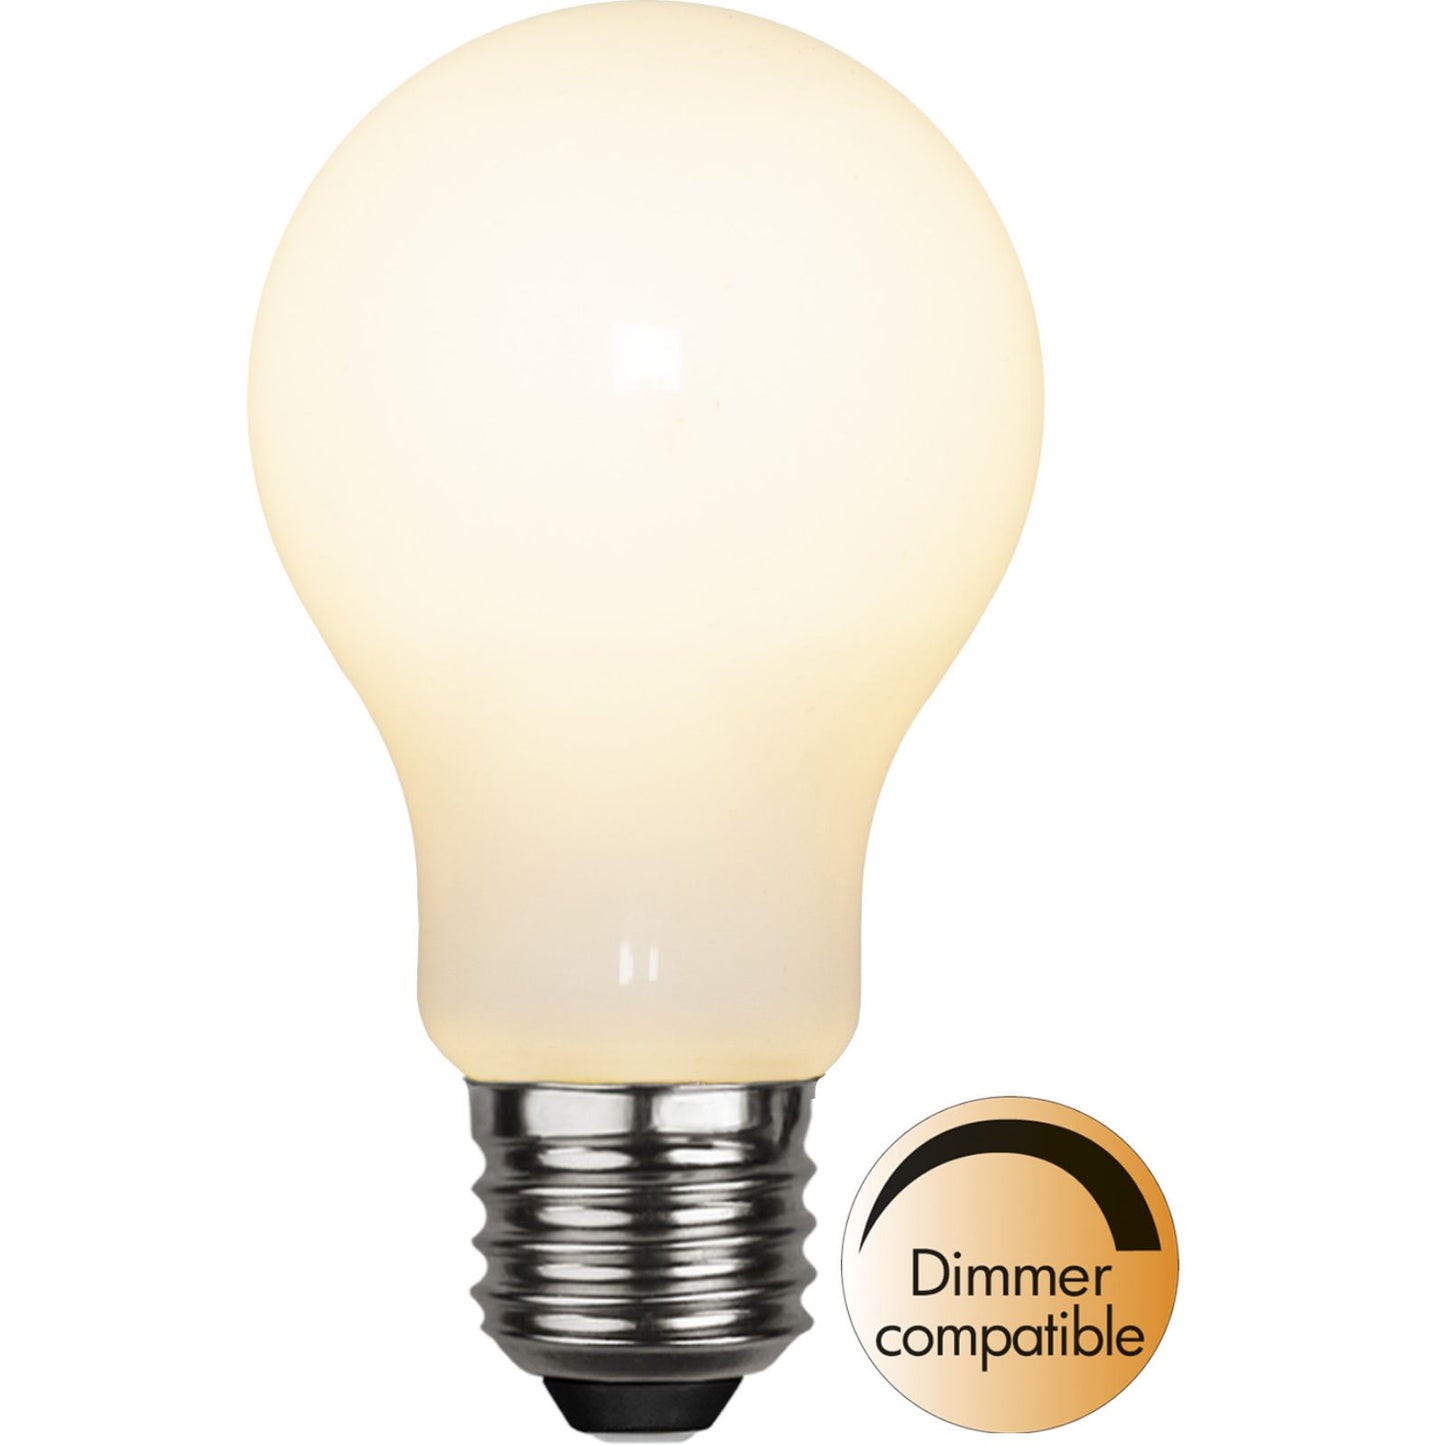 led-lampa-e27-a60-opaque-filament-ra90-375-31-2